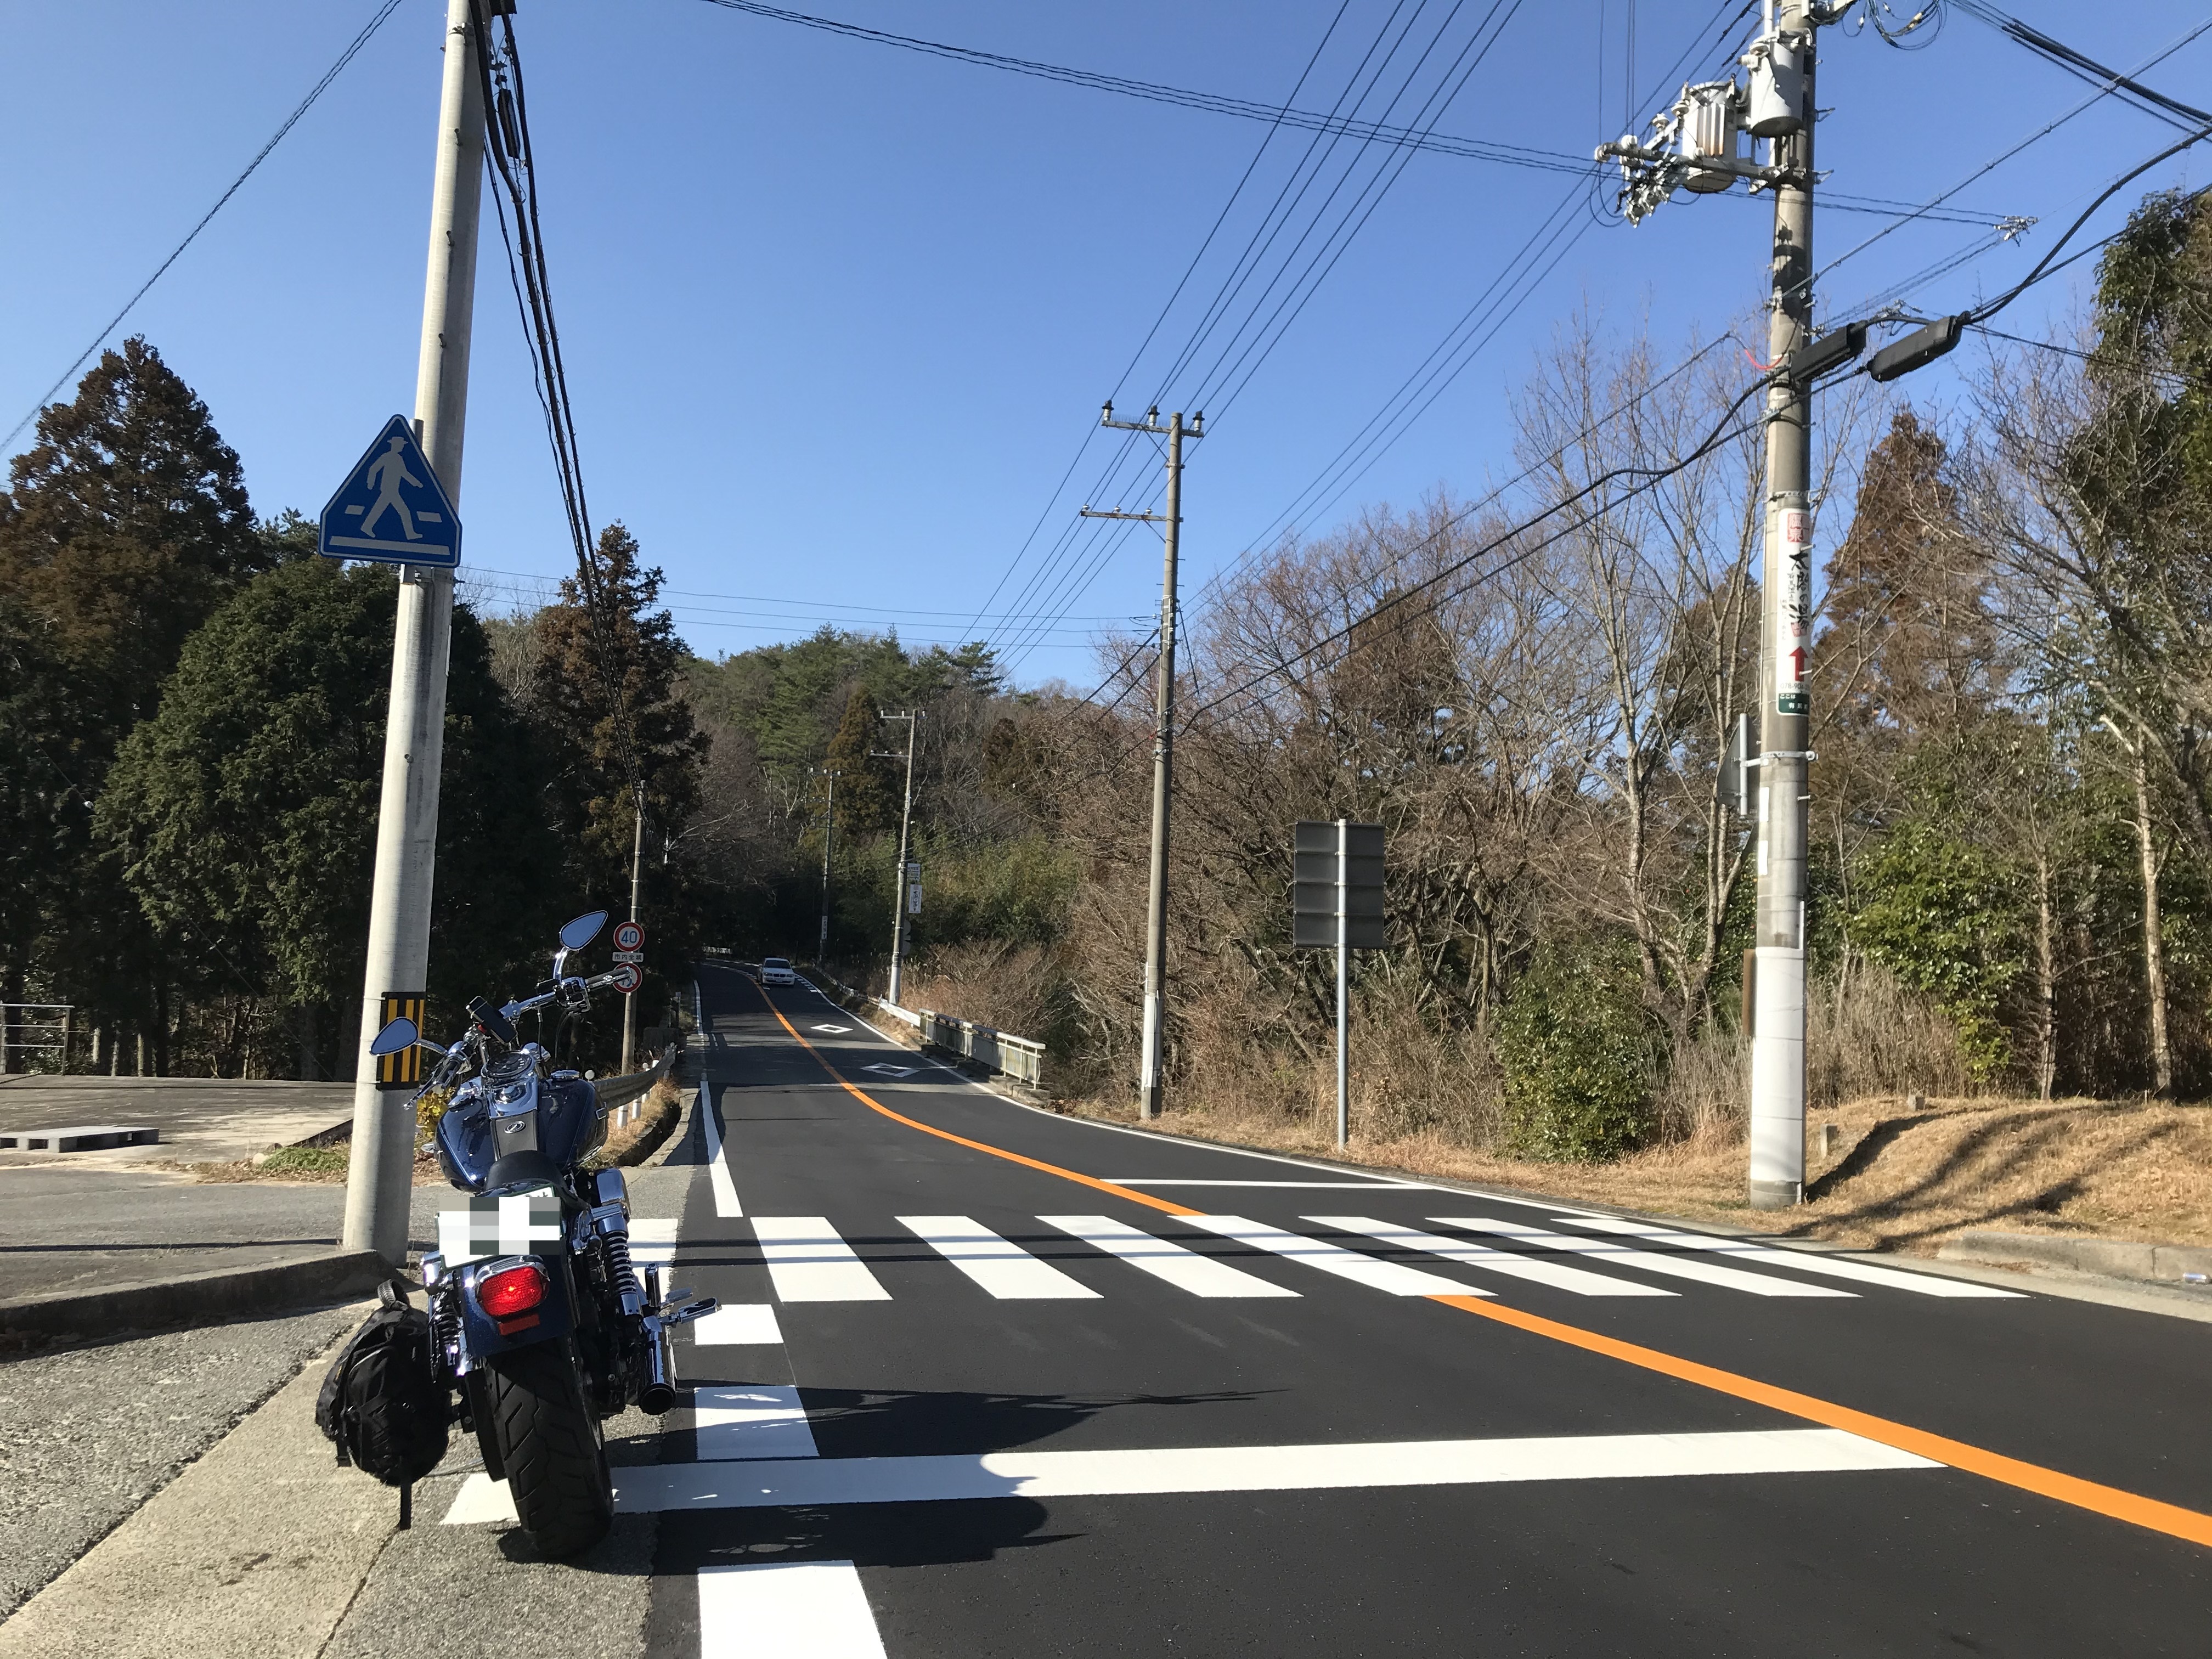 harleydavidson-motorcycle-touring-blog-arima-onsen-hotsprings-way-road.jpg